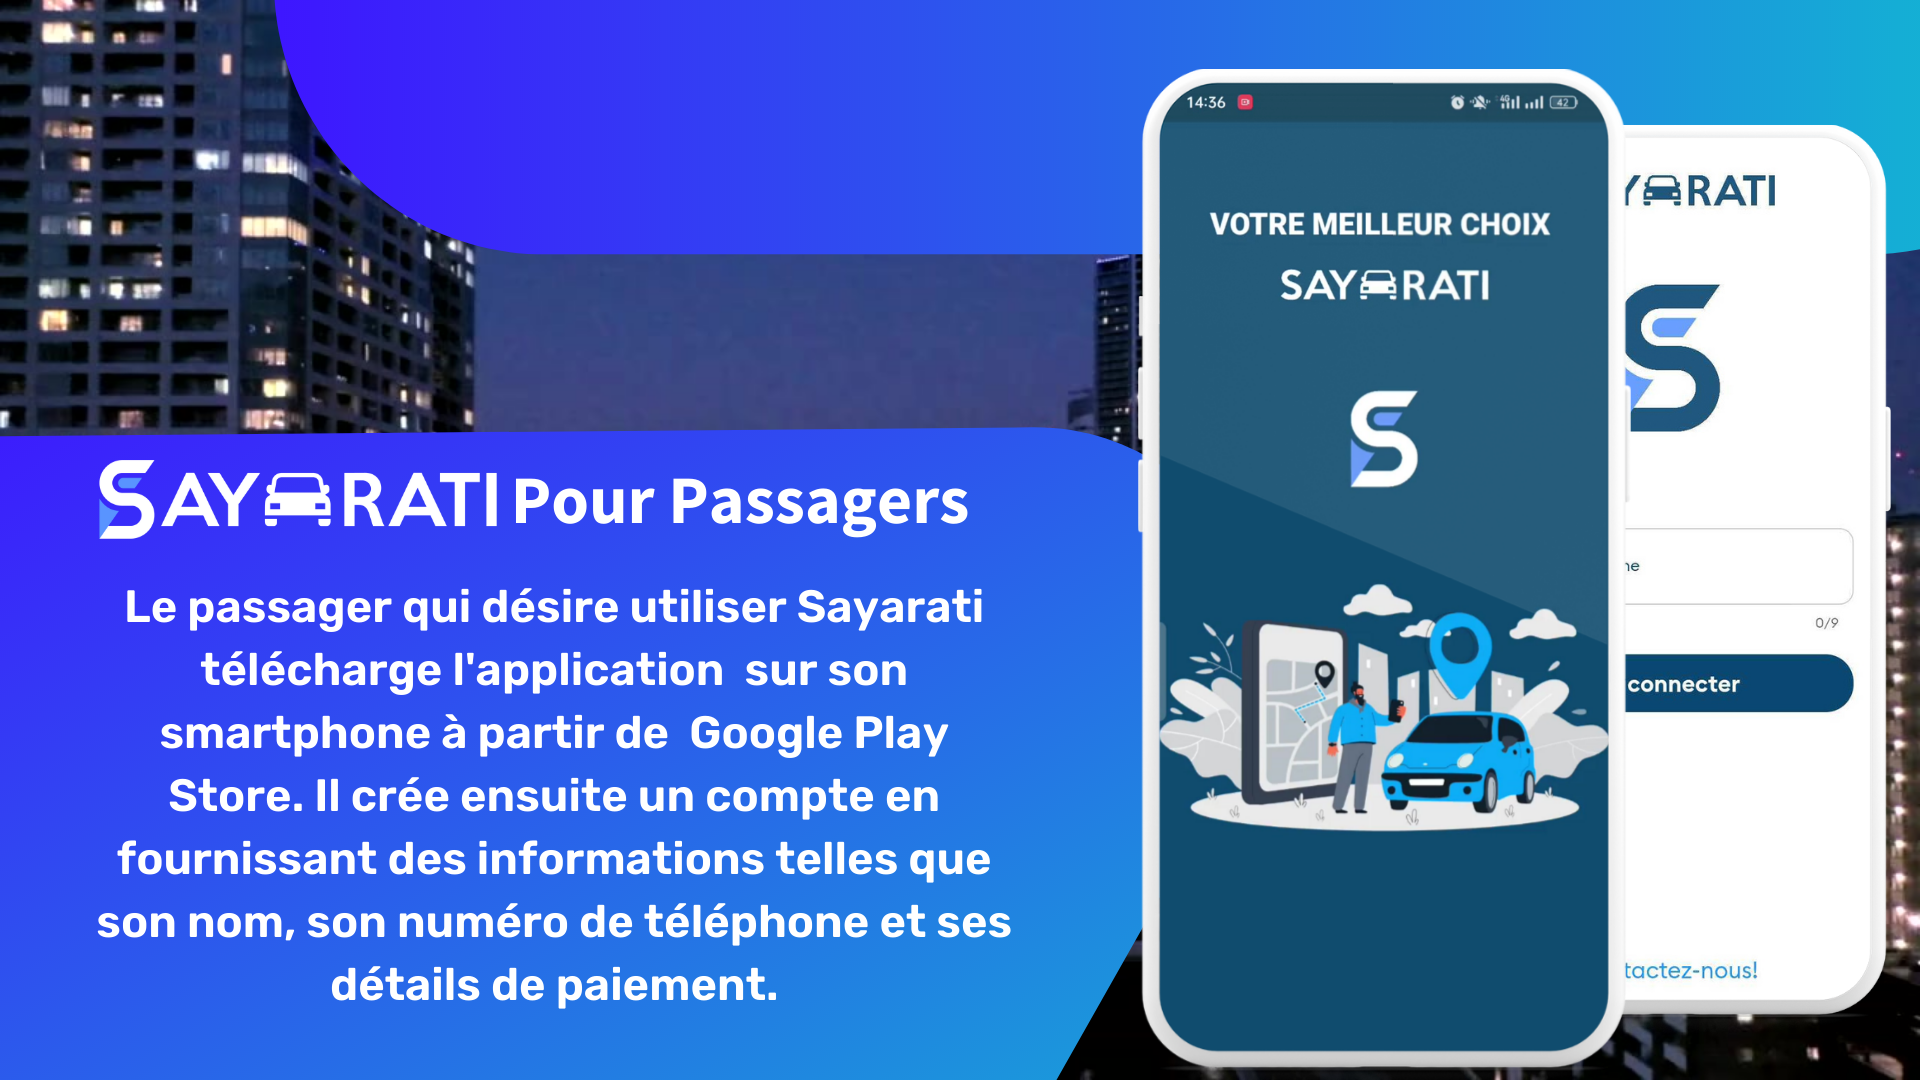 Passenger App